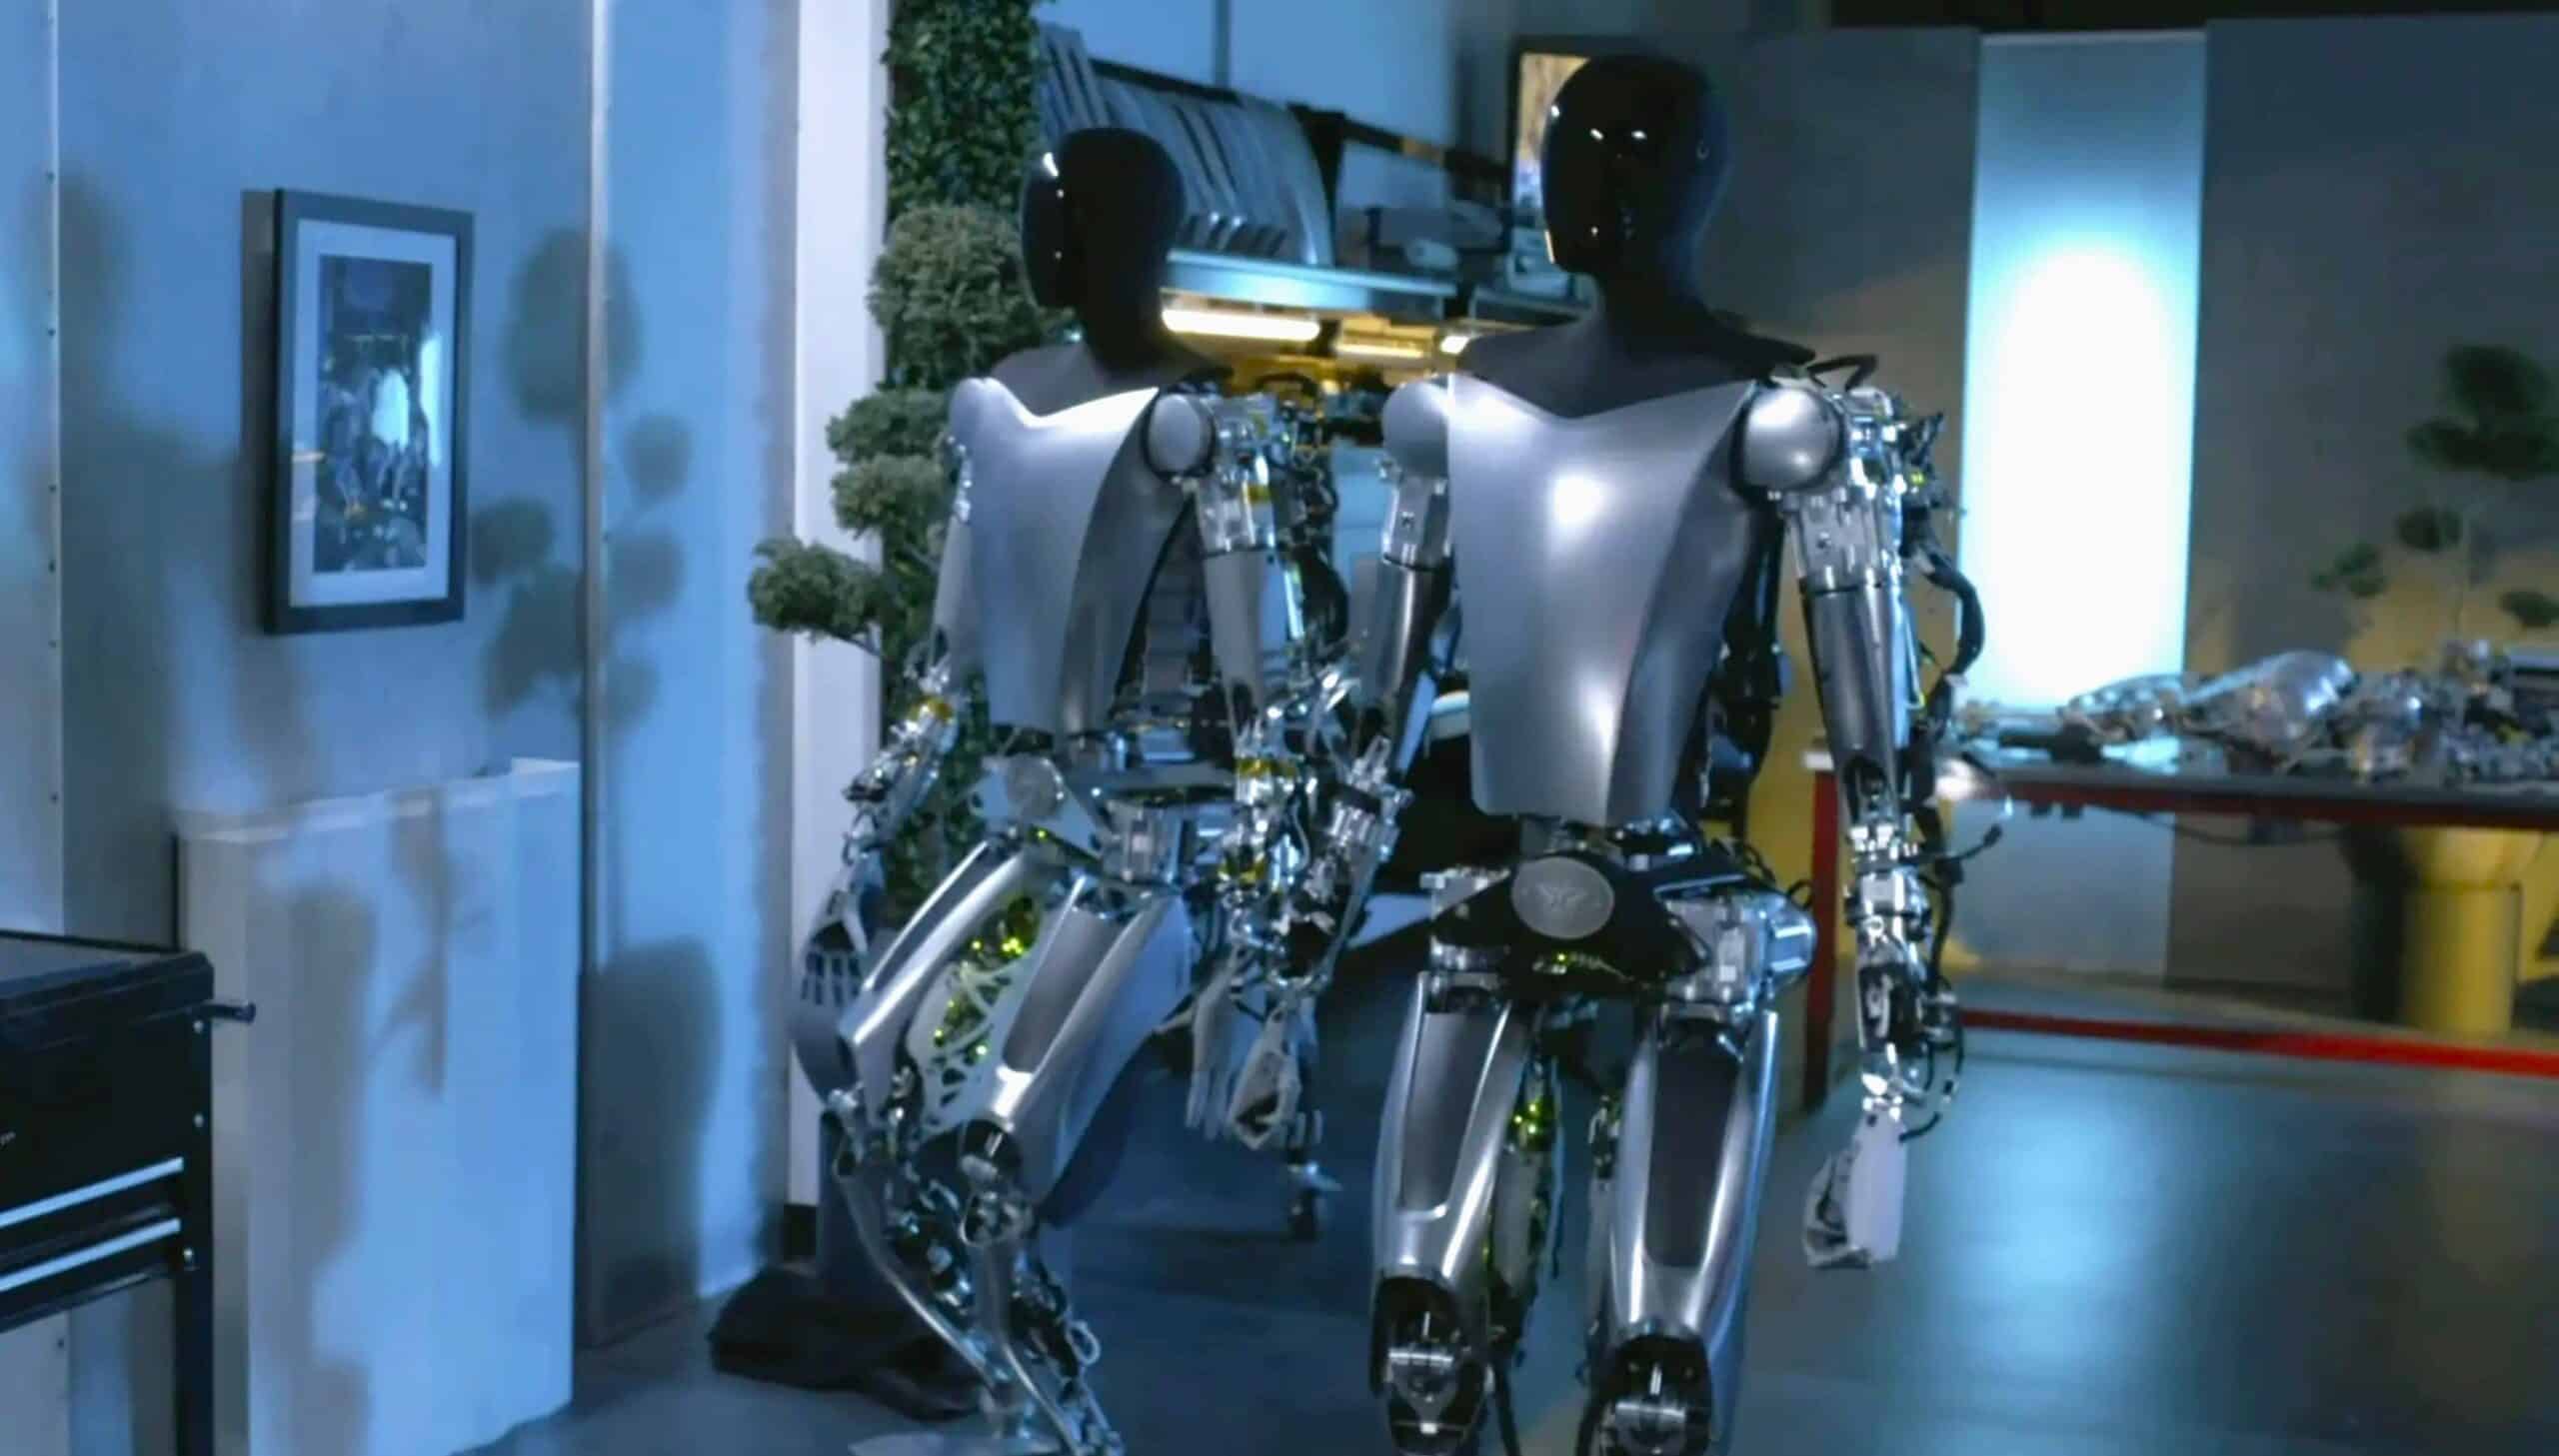 optimus tesla robot surpasser nombre humains emplois couv 2 scaled